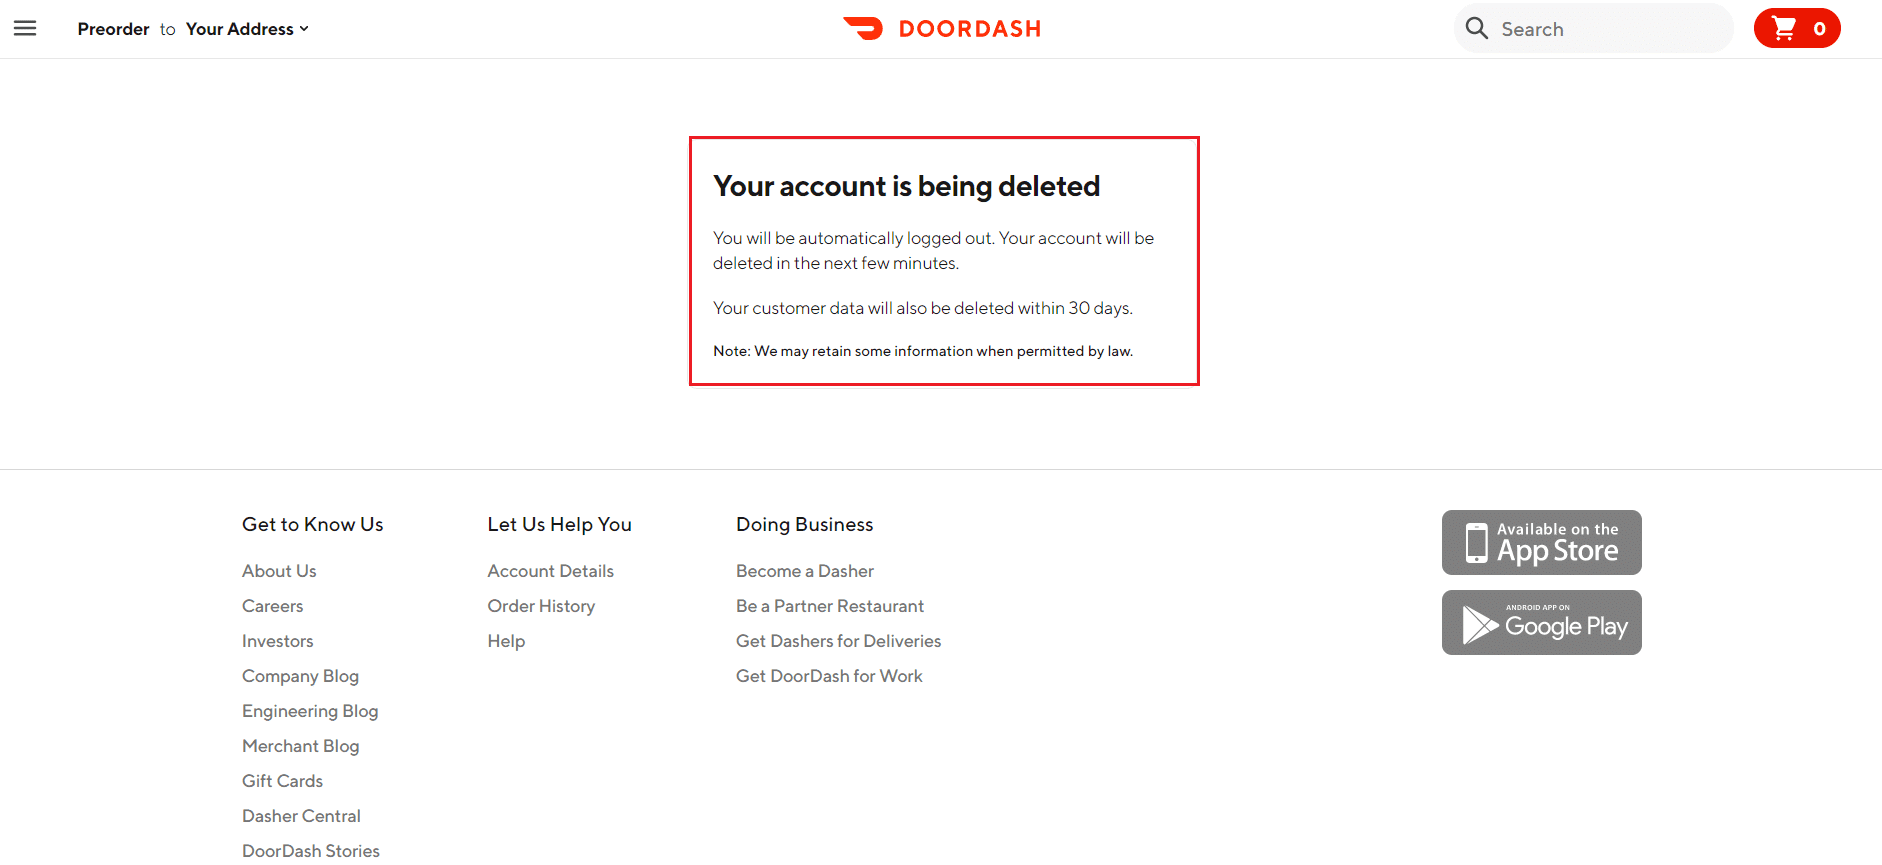 Сообщение о вашей учетной записи удалено на сайте DoorDash